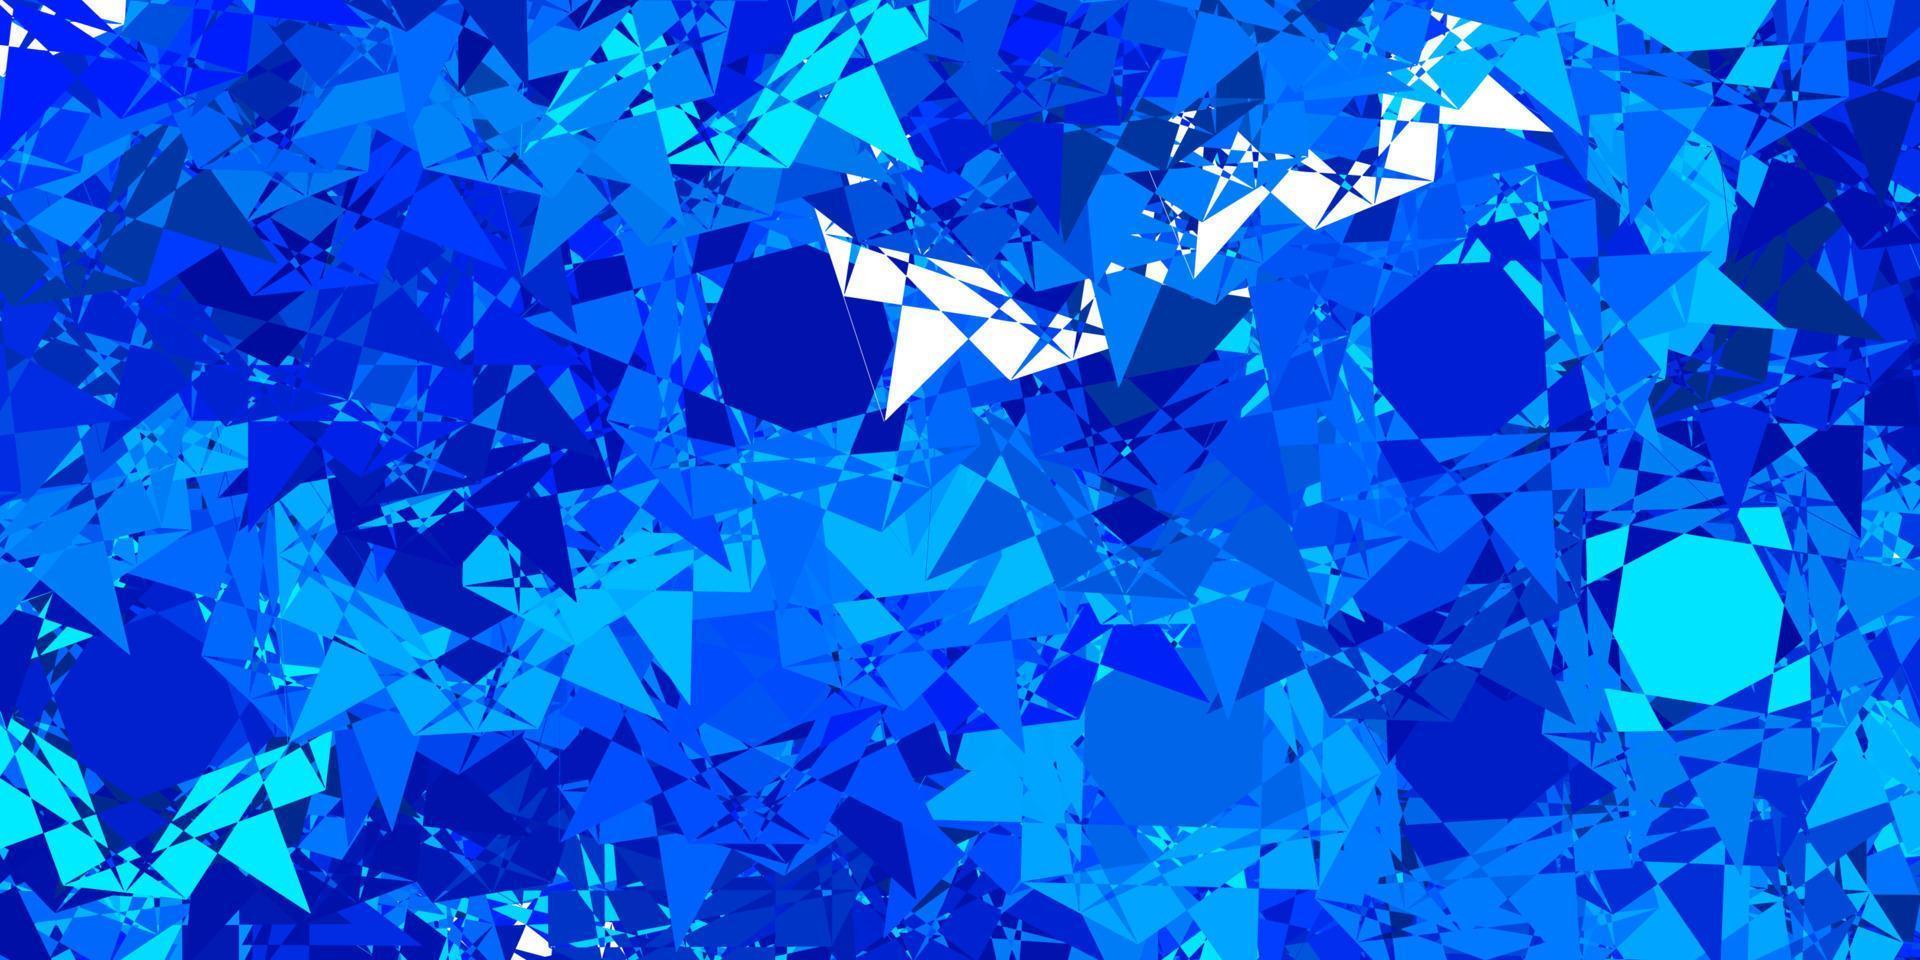 plantilla de vector azul claro con formas triangulares.